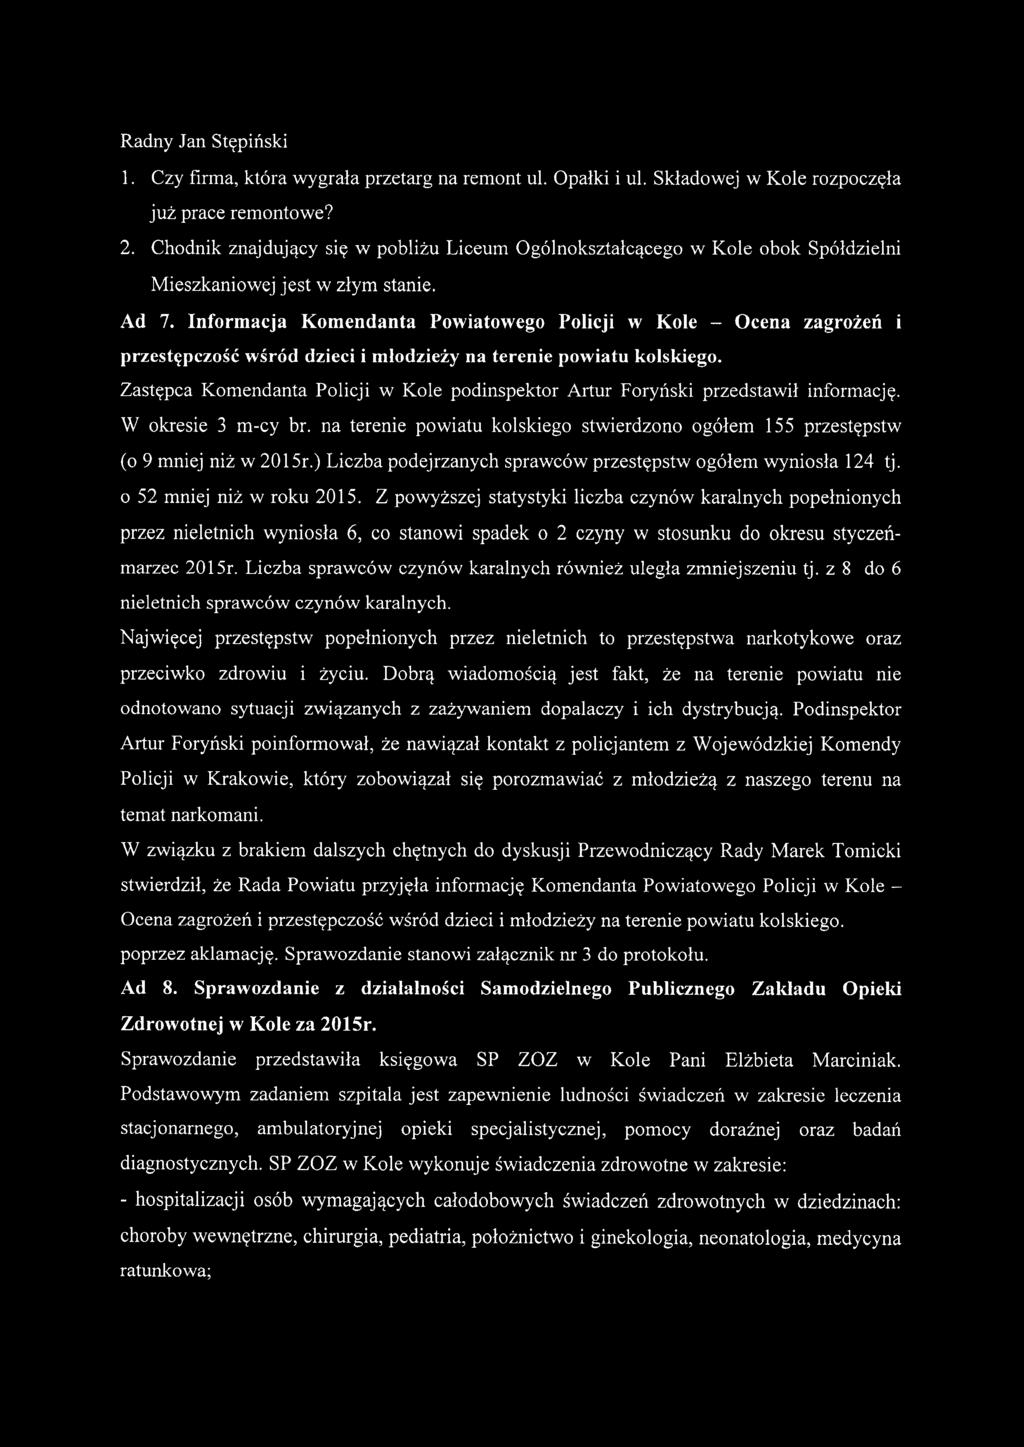 Informacja Komendanta Powiatowego Policji w Kole - Ocena zagrożeń przestępczość wśród dzieci i młodzieży na terenie powiatu kolskiego.